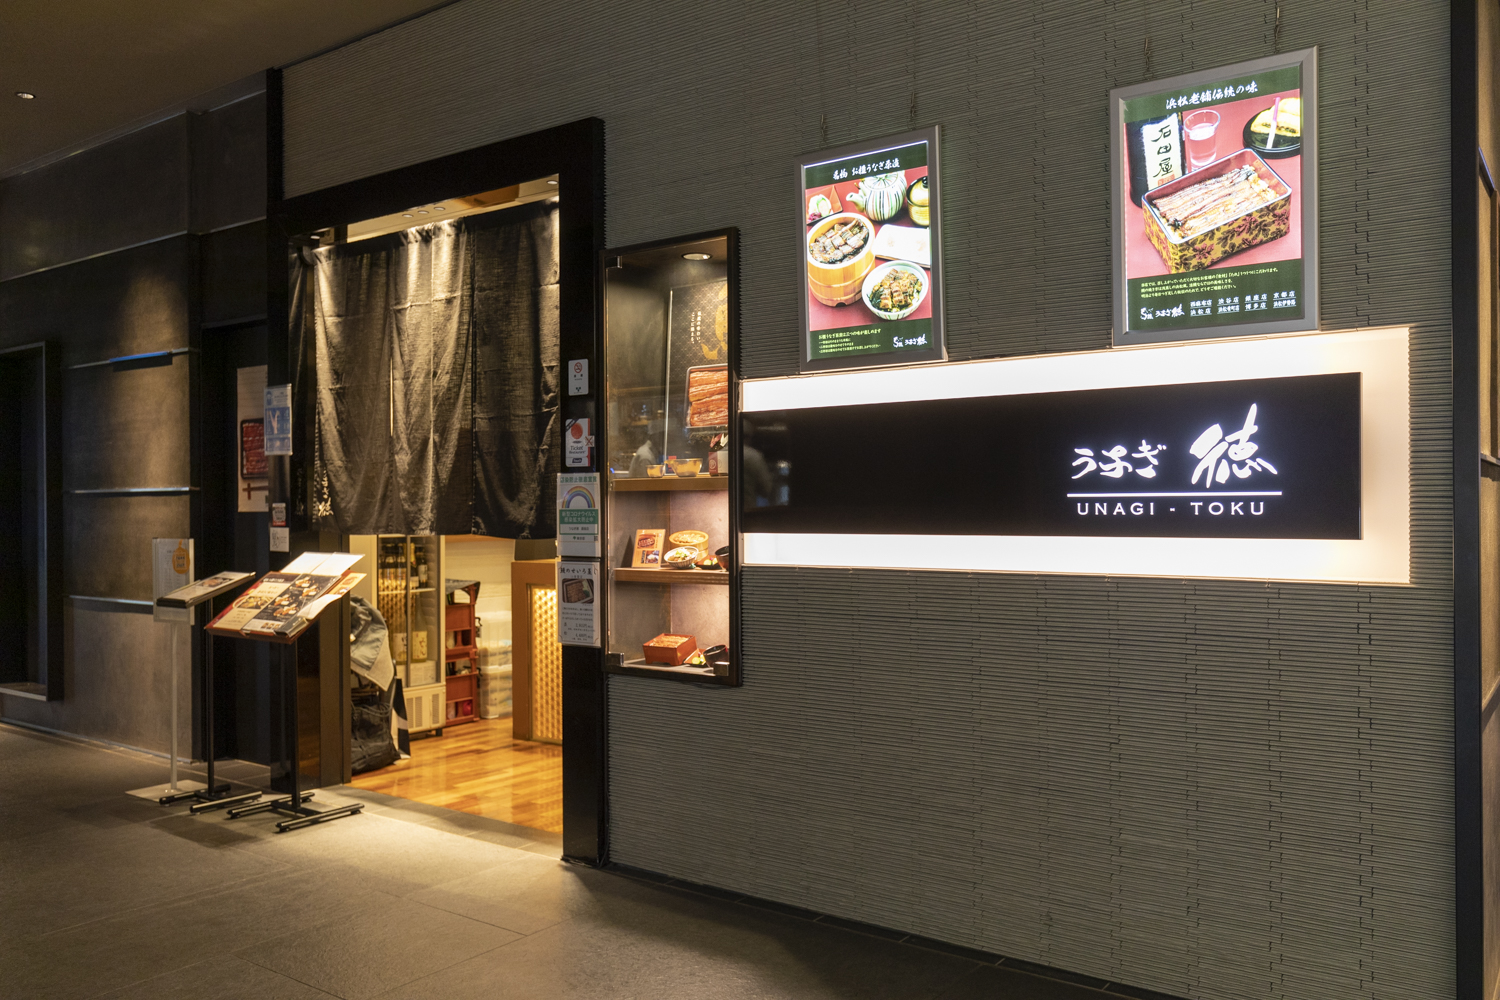 本店は静岡県浜松市にある老舗うなぎ専門店。